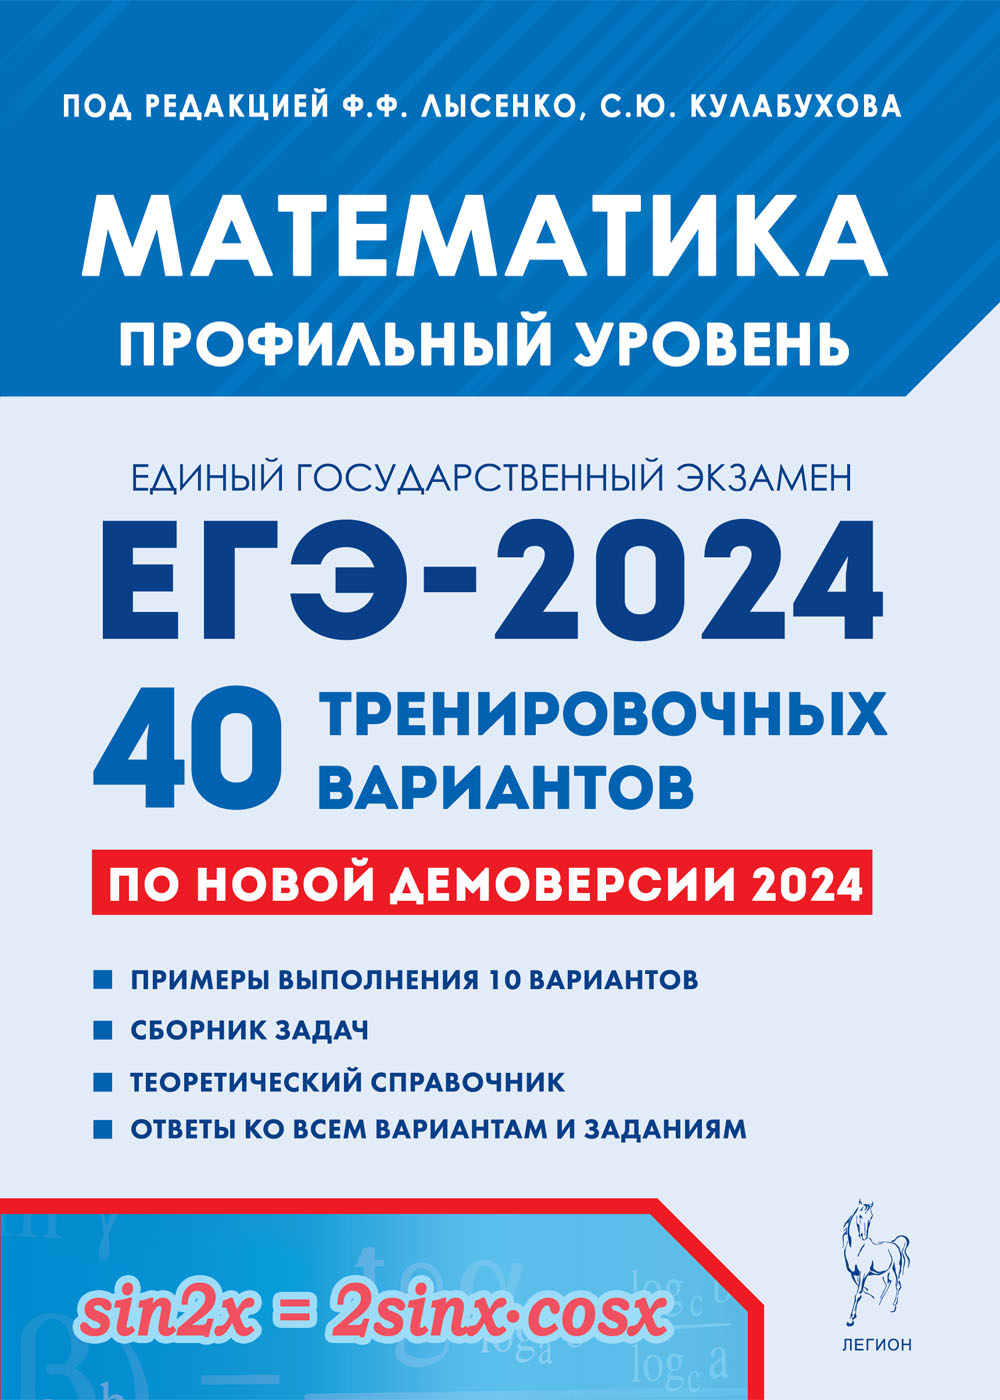 Математика. Подготовка к ЕГЭ-2024. Профильный уровень. 40 тренировочных вариантов по демоверсии 2024 года